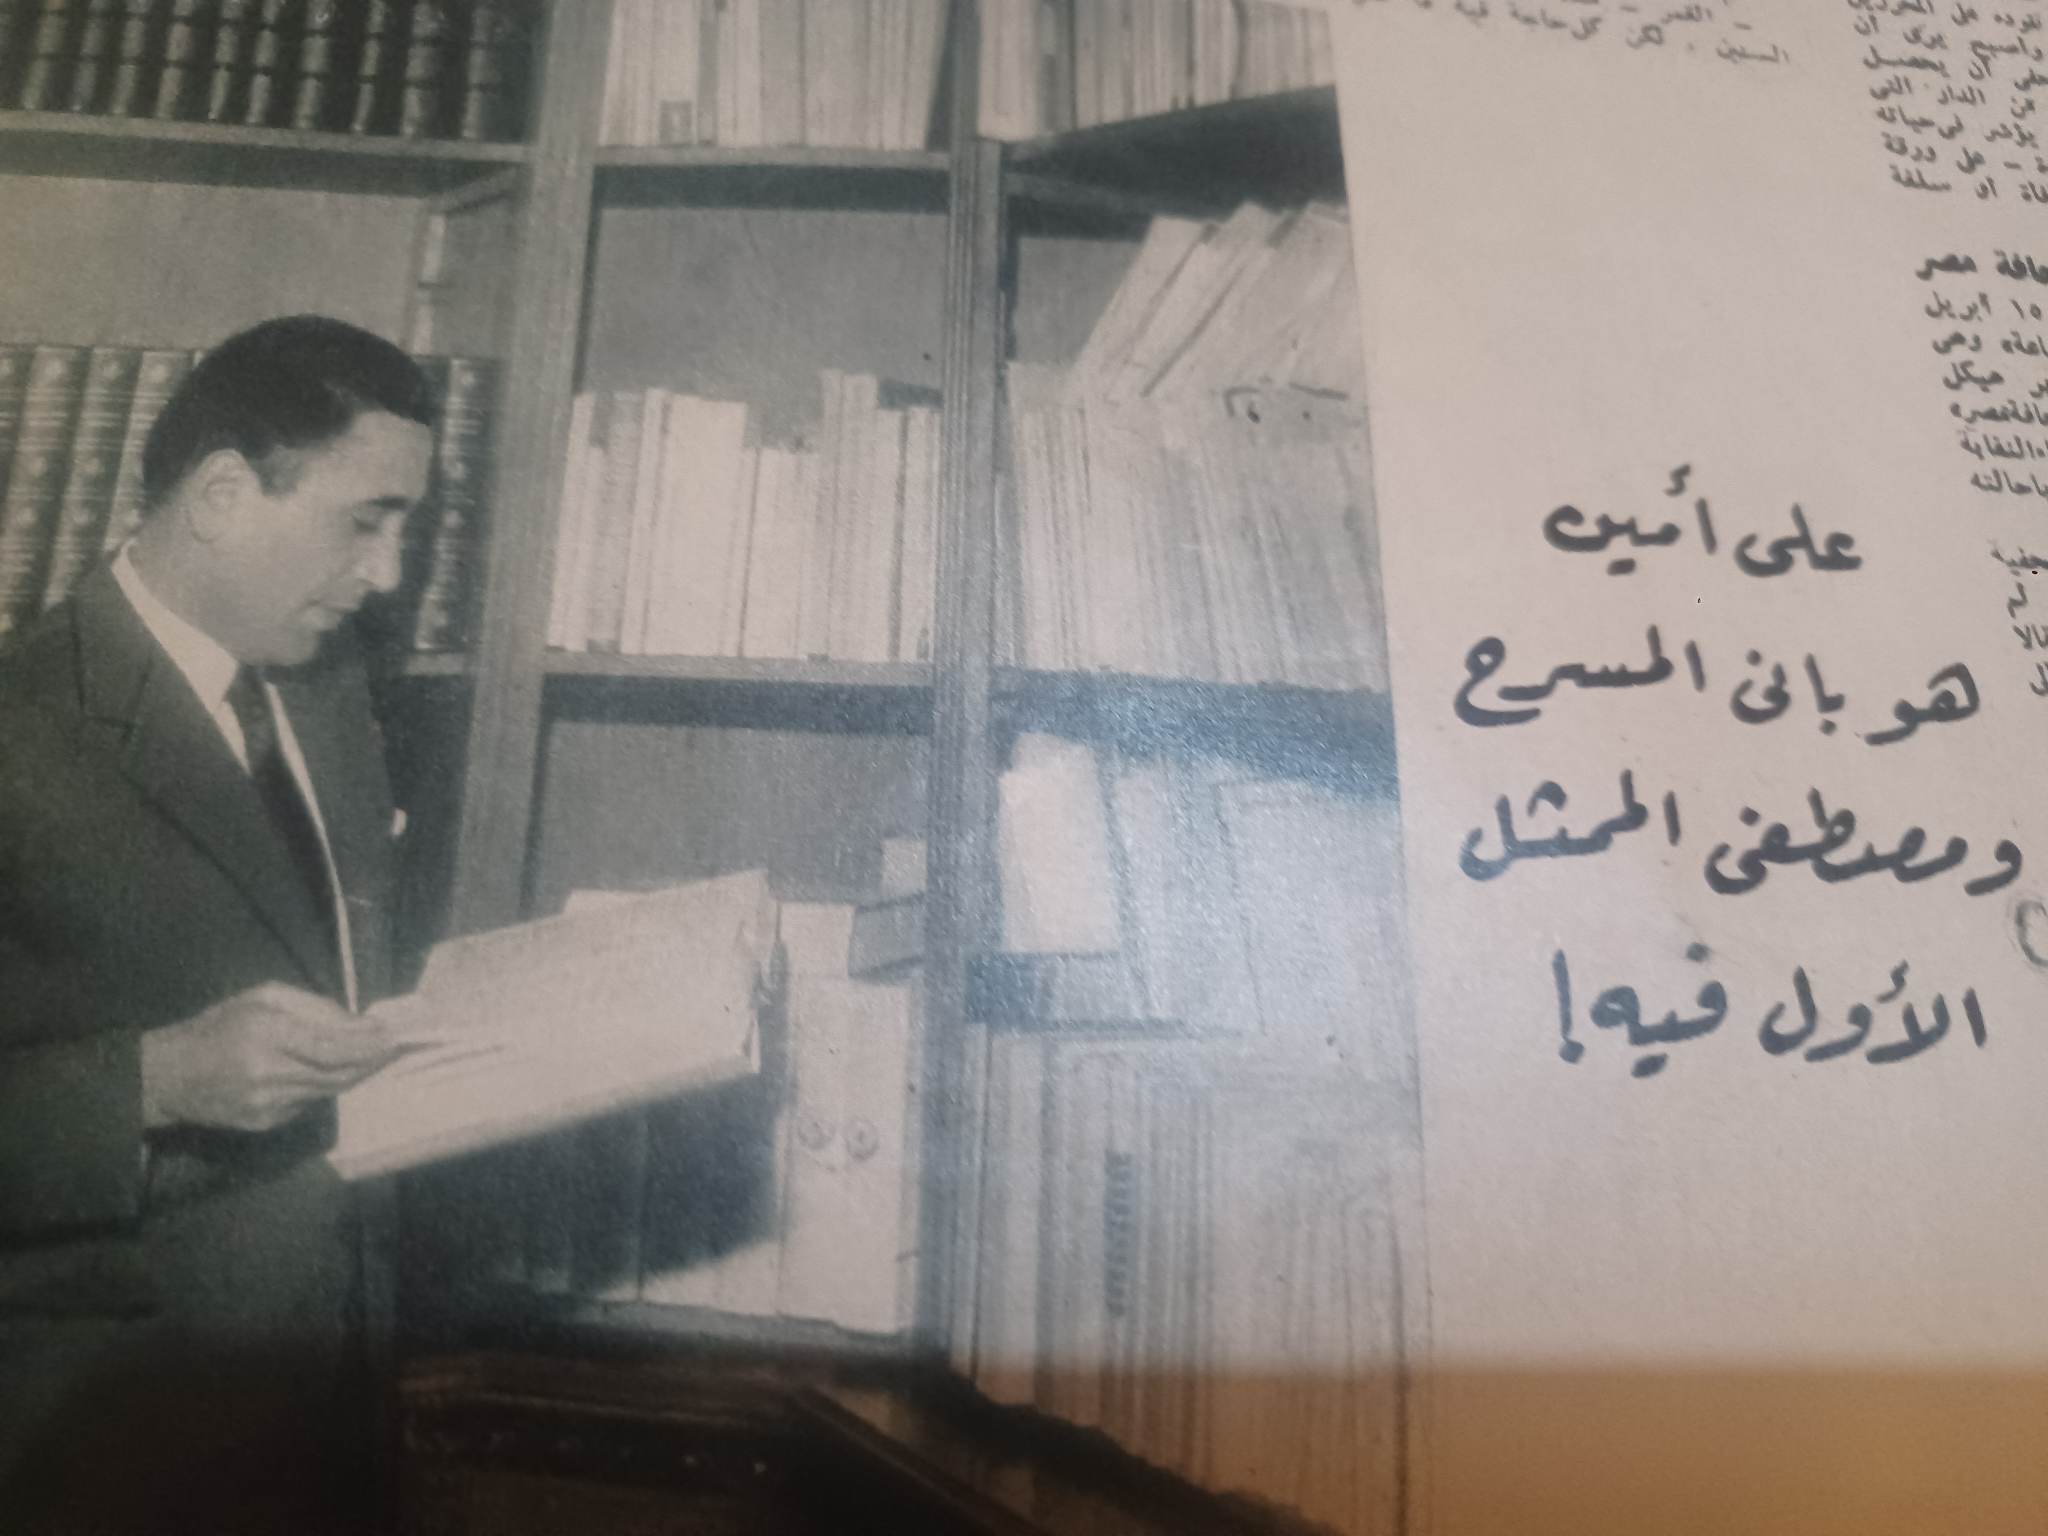 حوار نادر أجراه الأستاذ جليل البنداري مع الأستاذ محمد حسنين هيكل في مجلة آخر ساعة